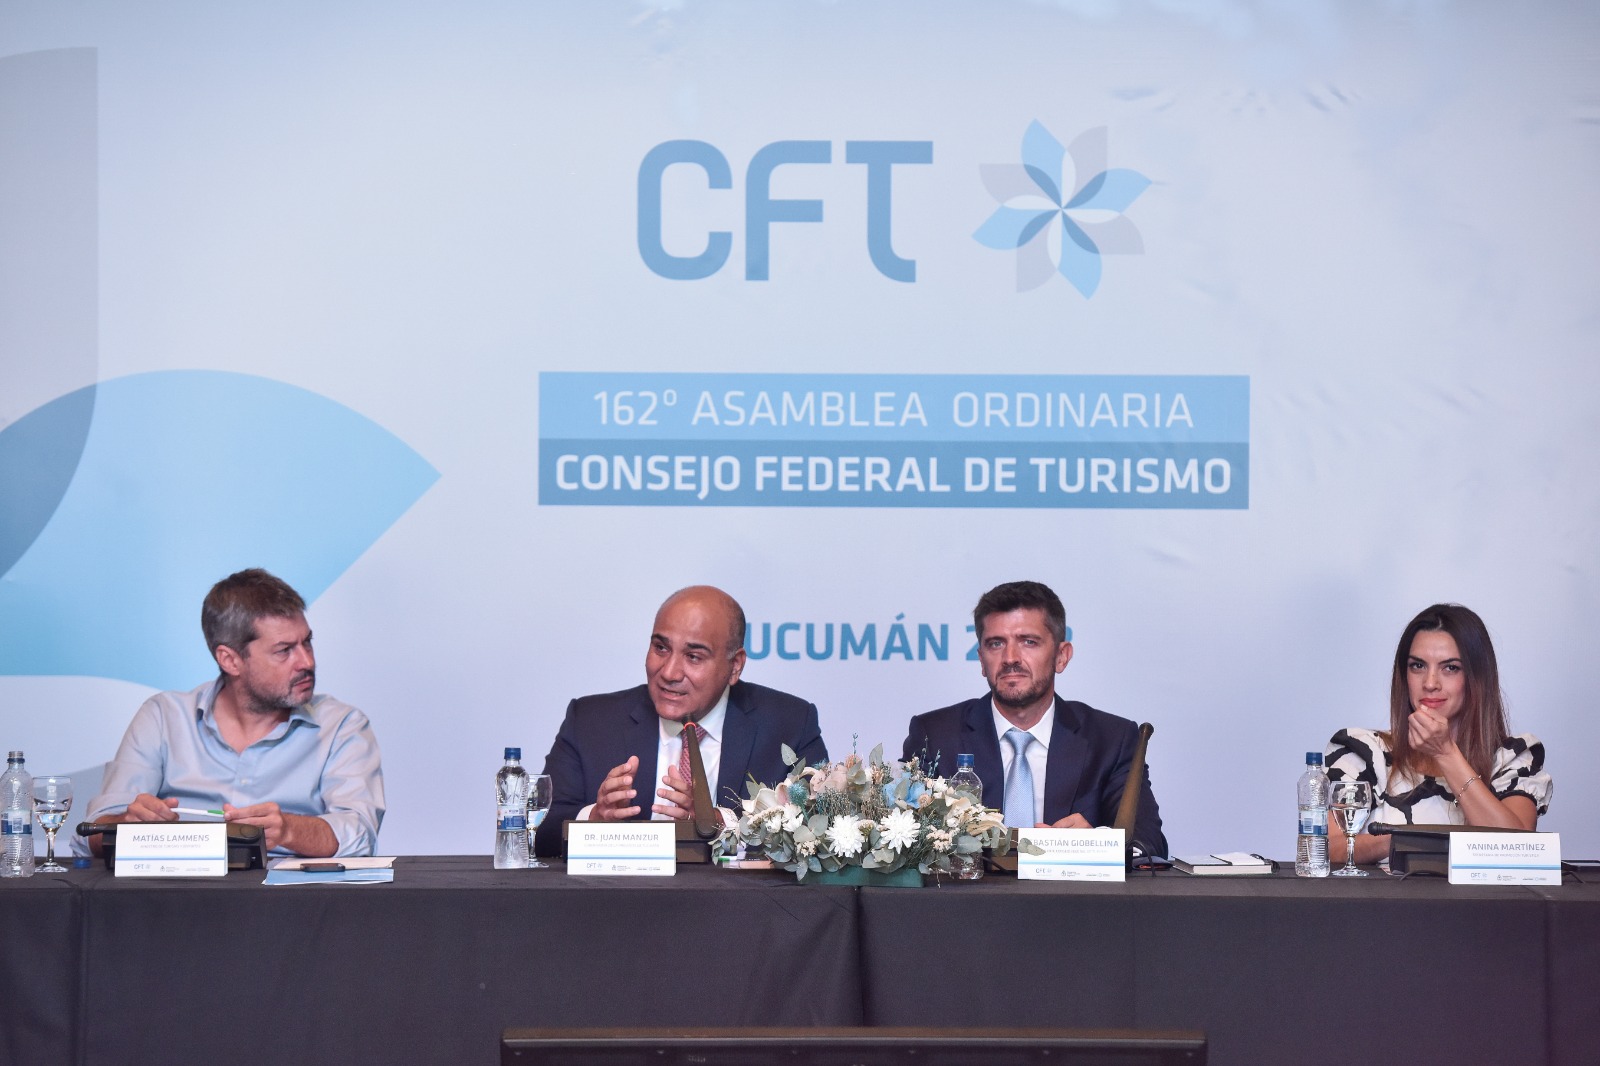 162° Asamblea del Consejo Federal de Turismo en Tucumán | Argentina.gob.ar